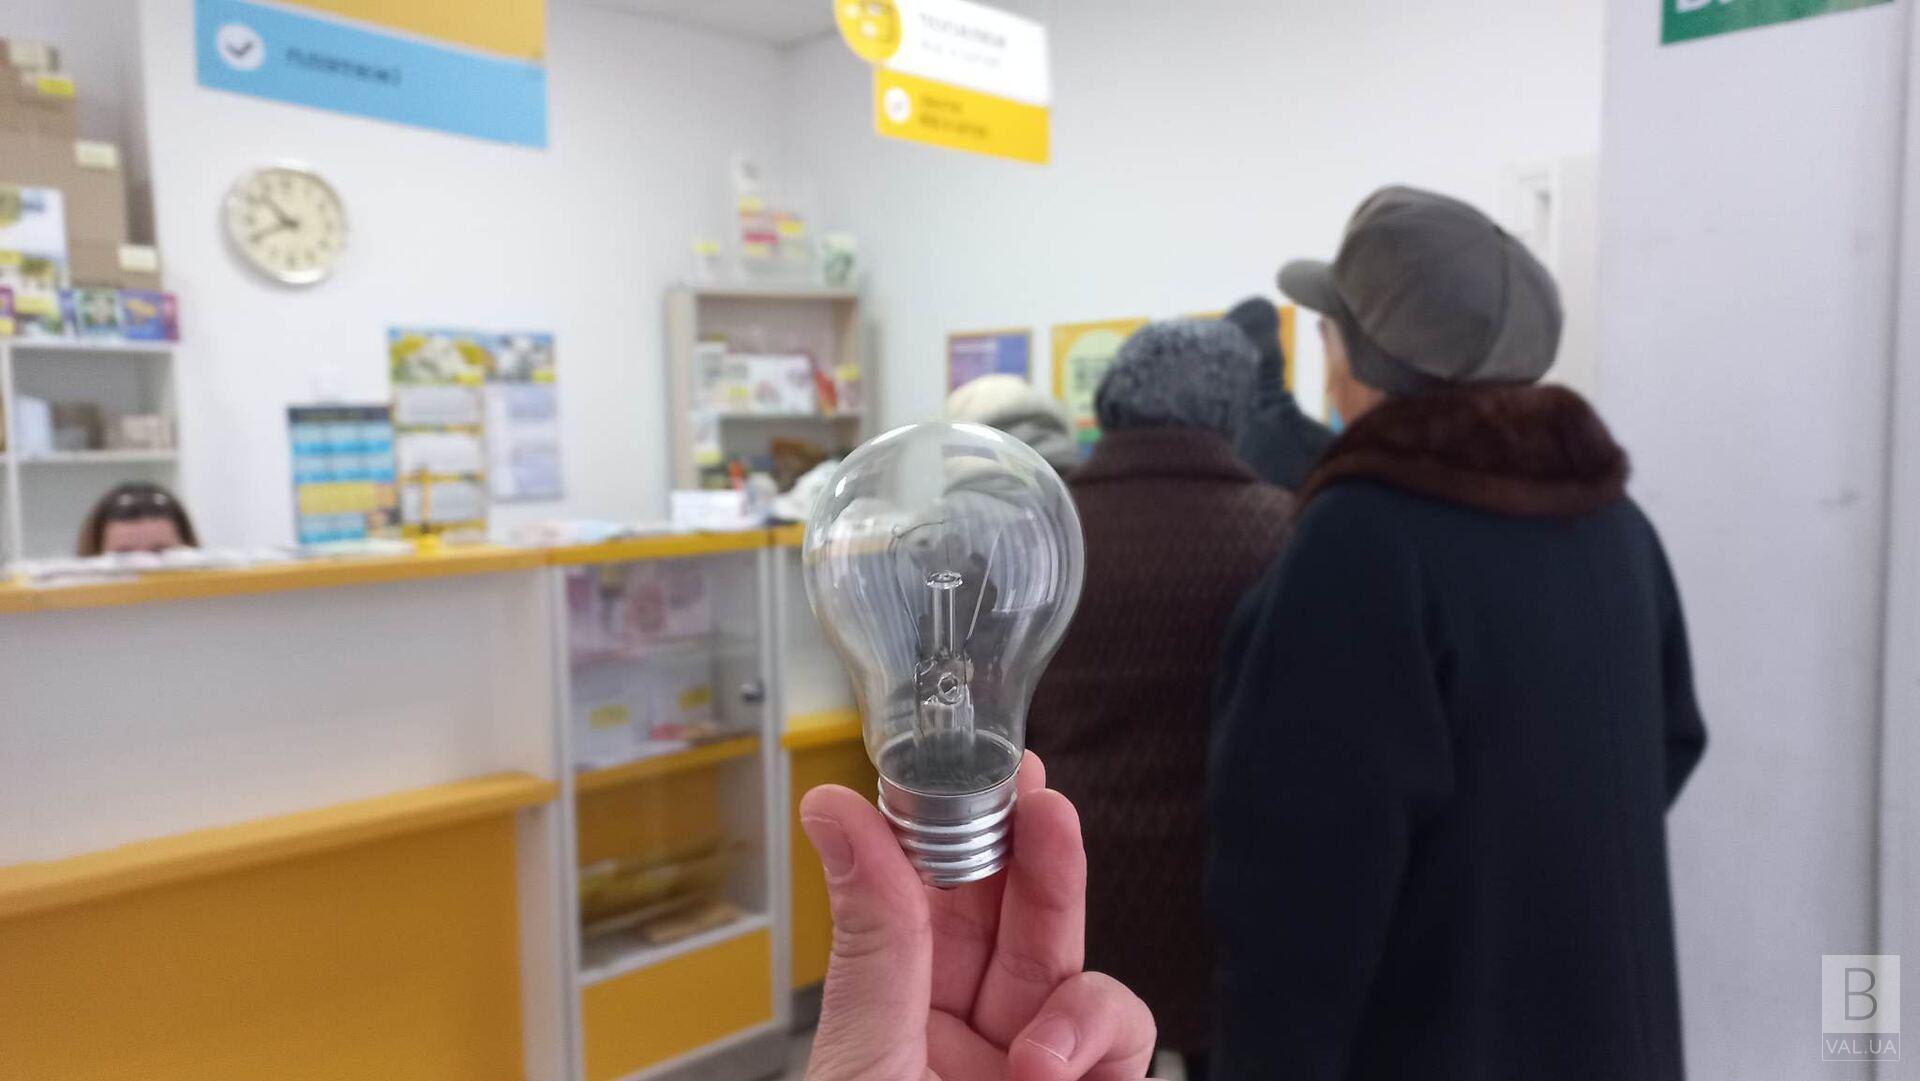 Вже з 5 грудня пенсіонери зможуть отримати 5 безкоштовних LED-ламп у всіх відділеннях «Укрпошти»: як це зробити